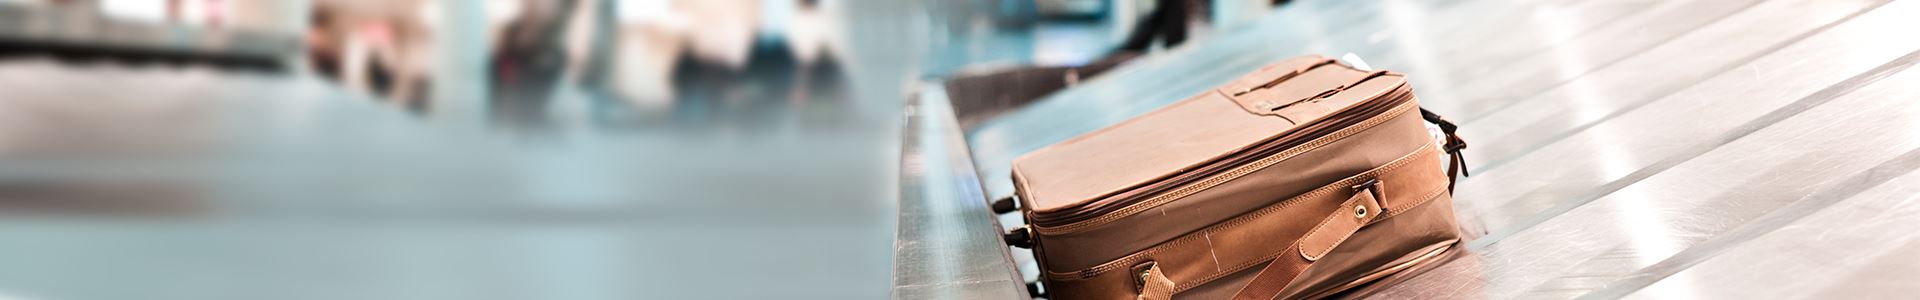 Zdjęcie przedstawia brązową walizkę leżącą na taśmie bagażowej na lotnisku. W pobliżu nie ma innych walizek.